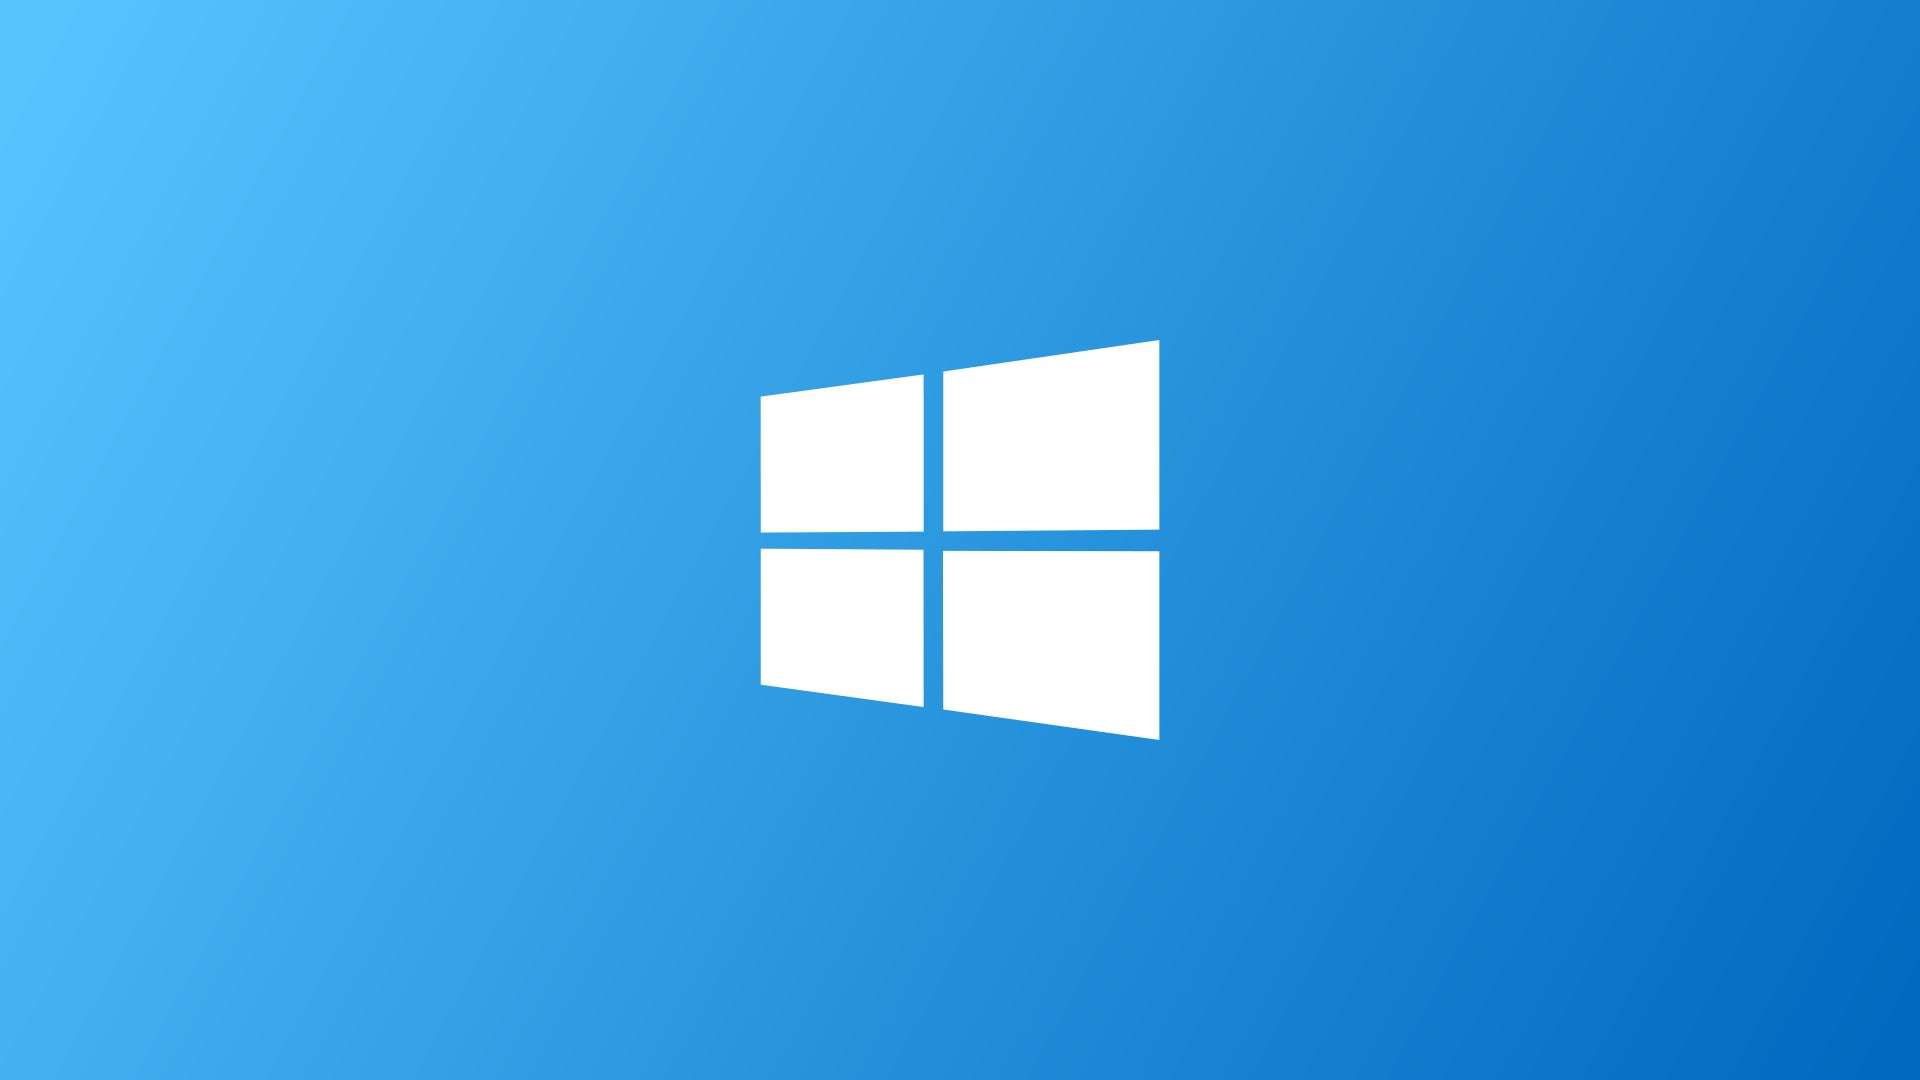 ติดตั้ง Windows 10 Pro แทน Windows 10 Home ที่ติดมากับเครื่อง โดยการ Bypass OEM License